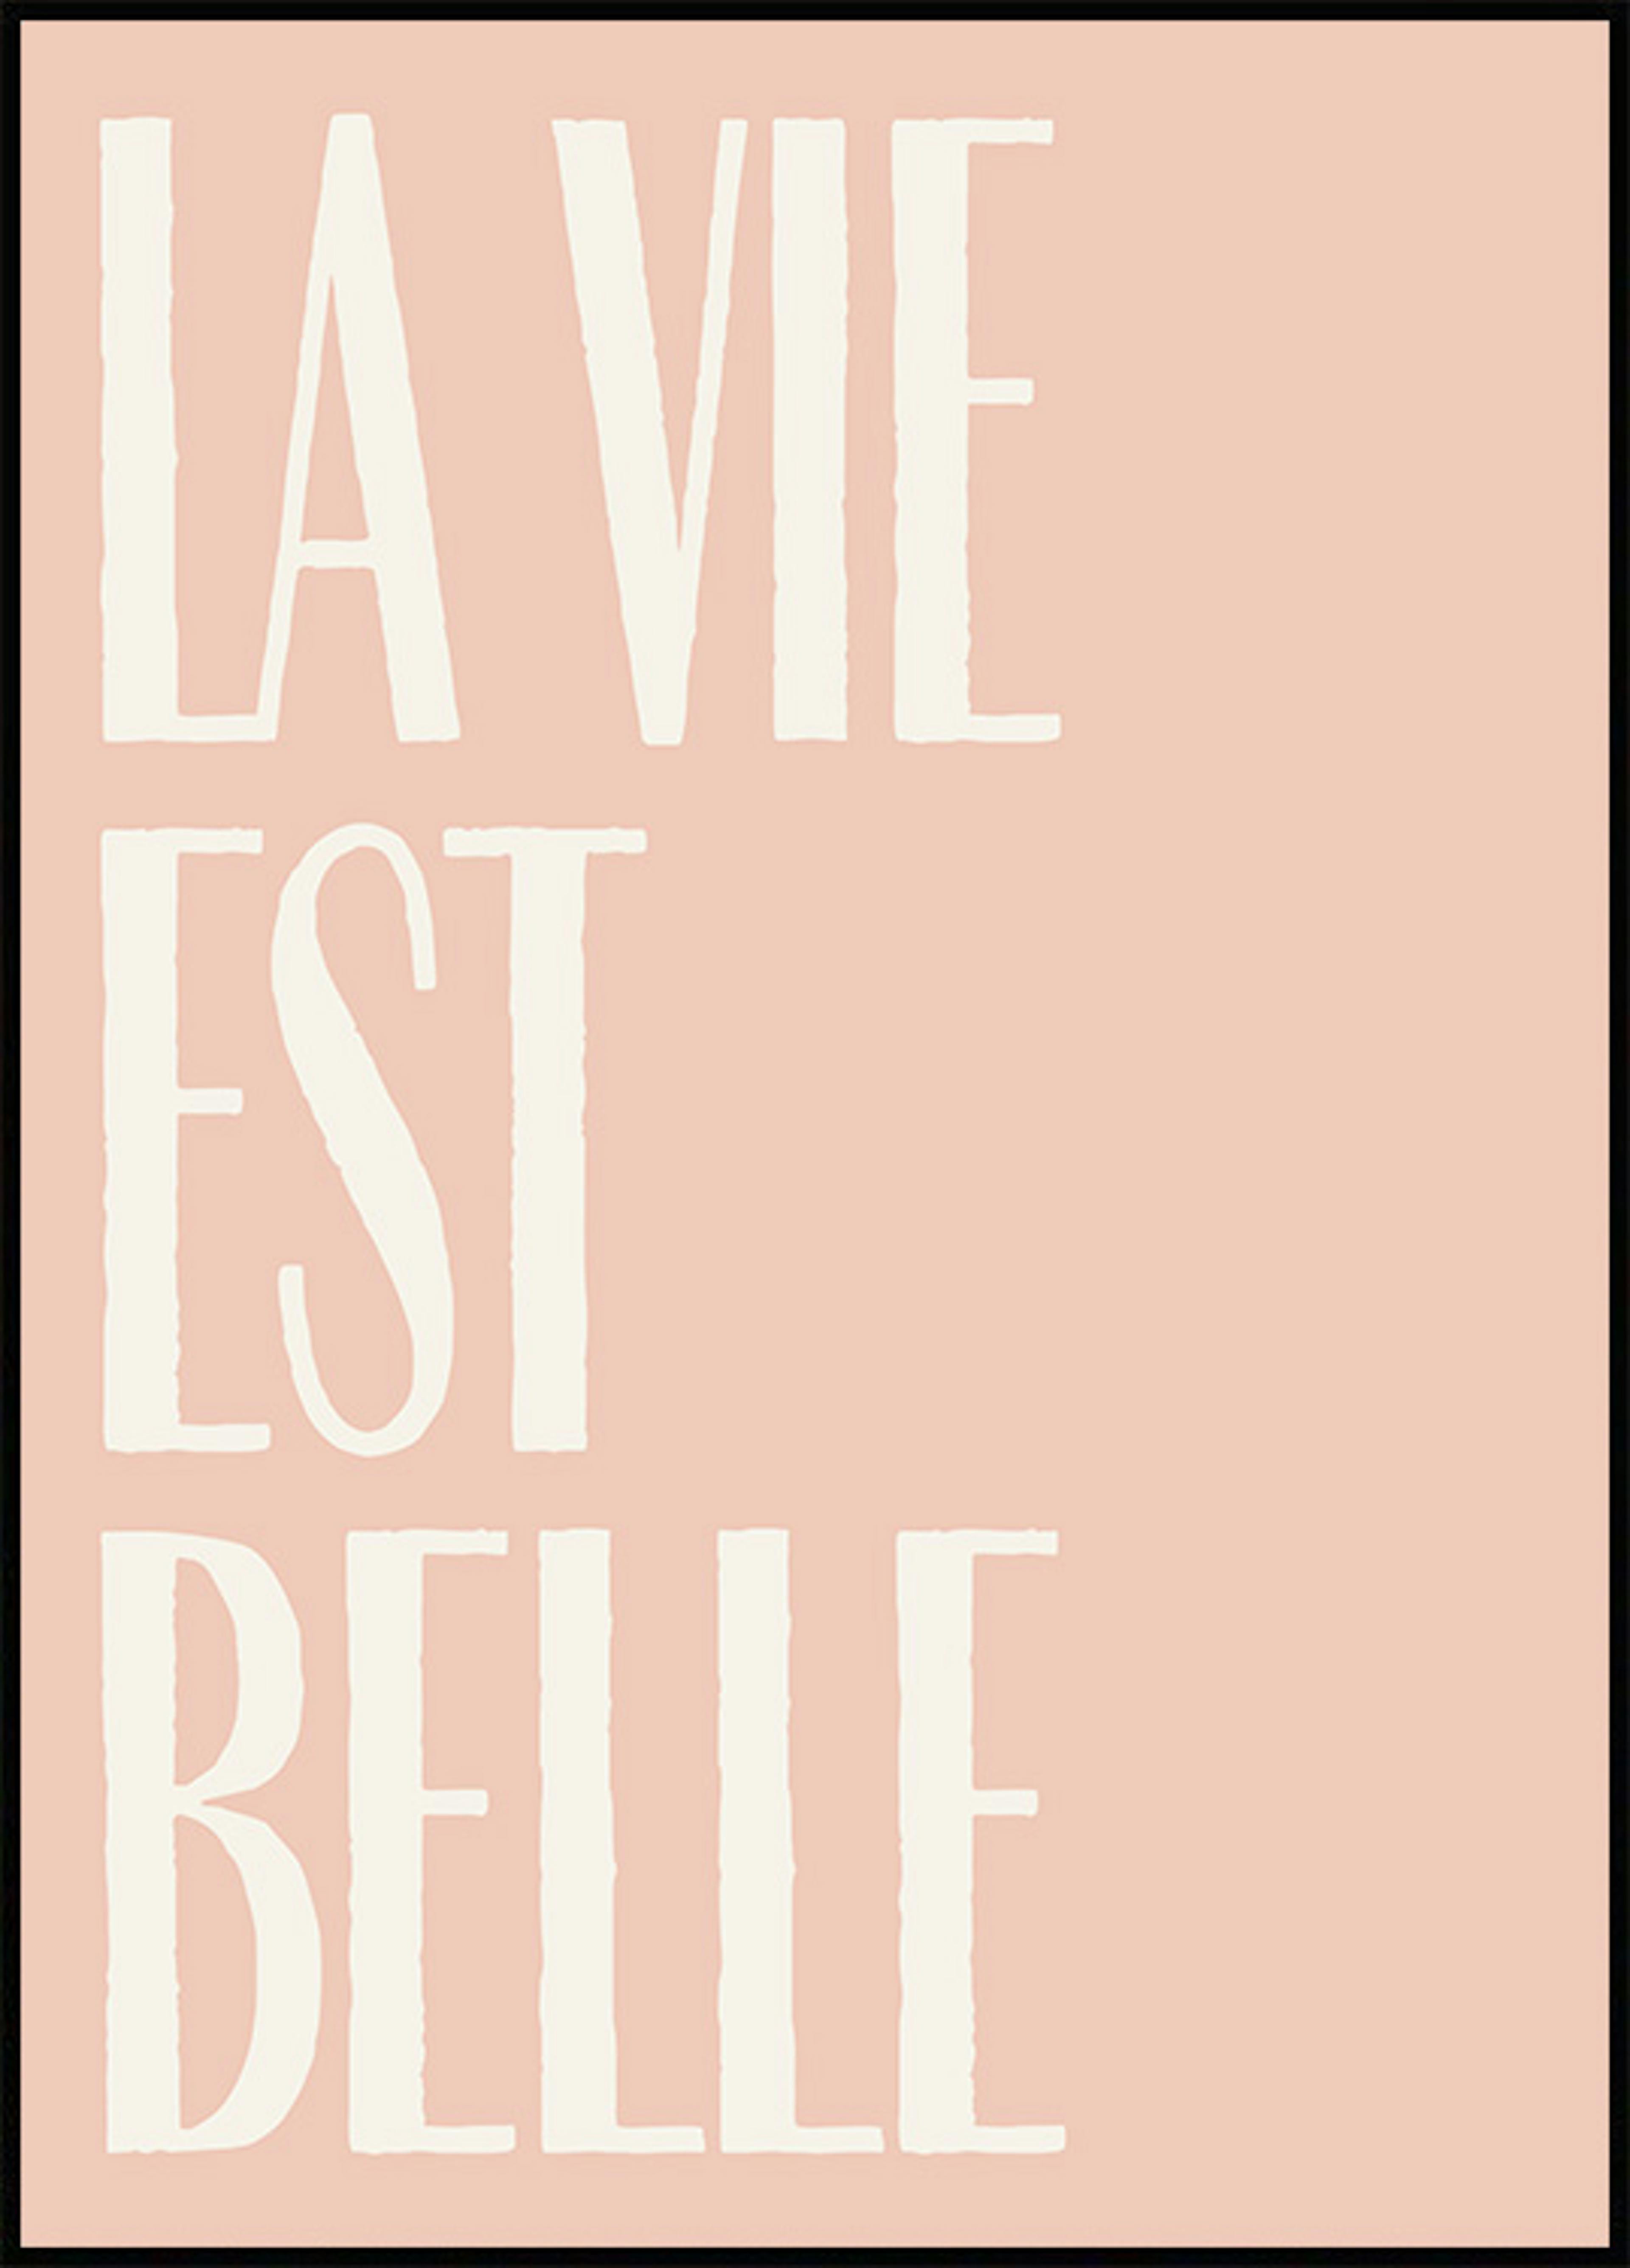 La Vie Est Belle Text Poster 0